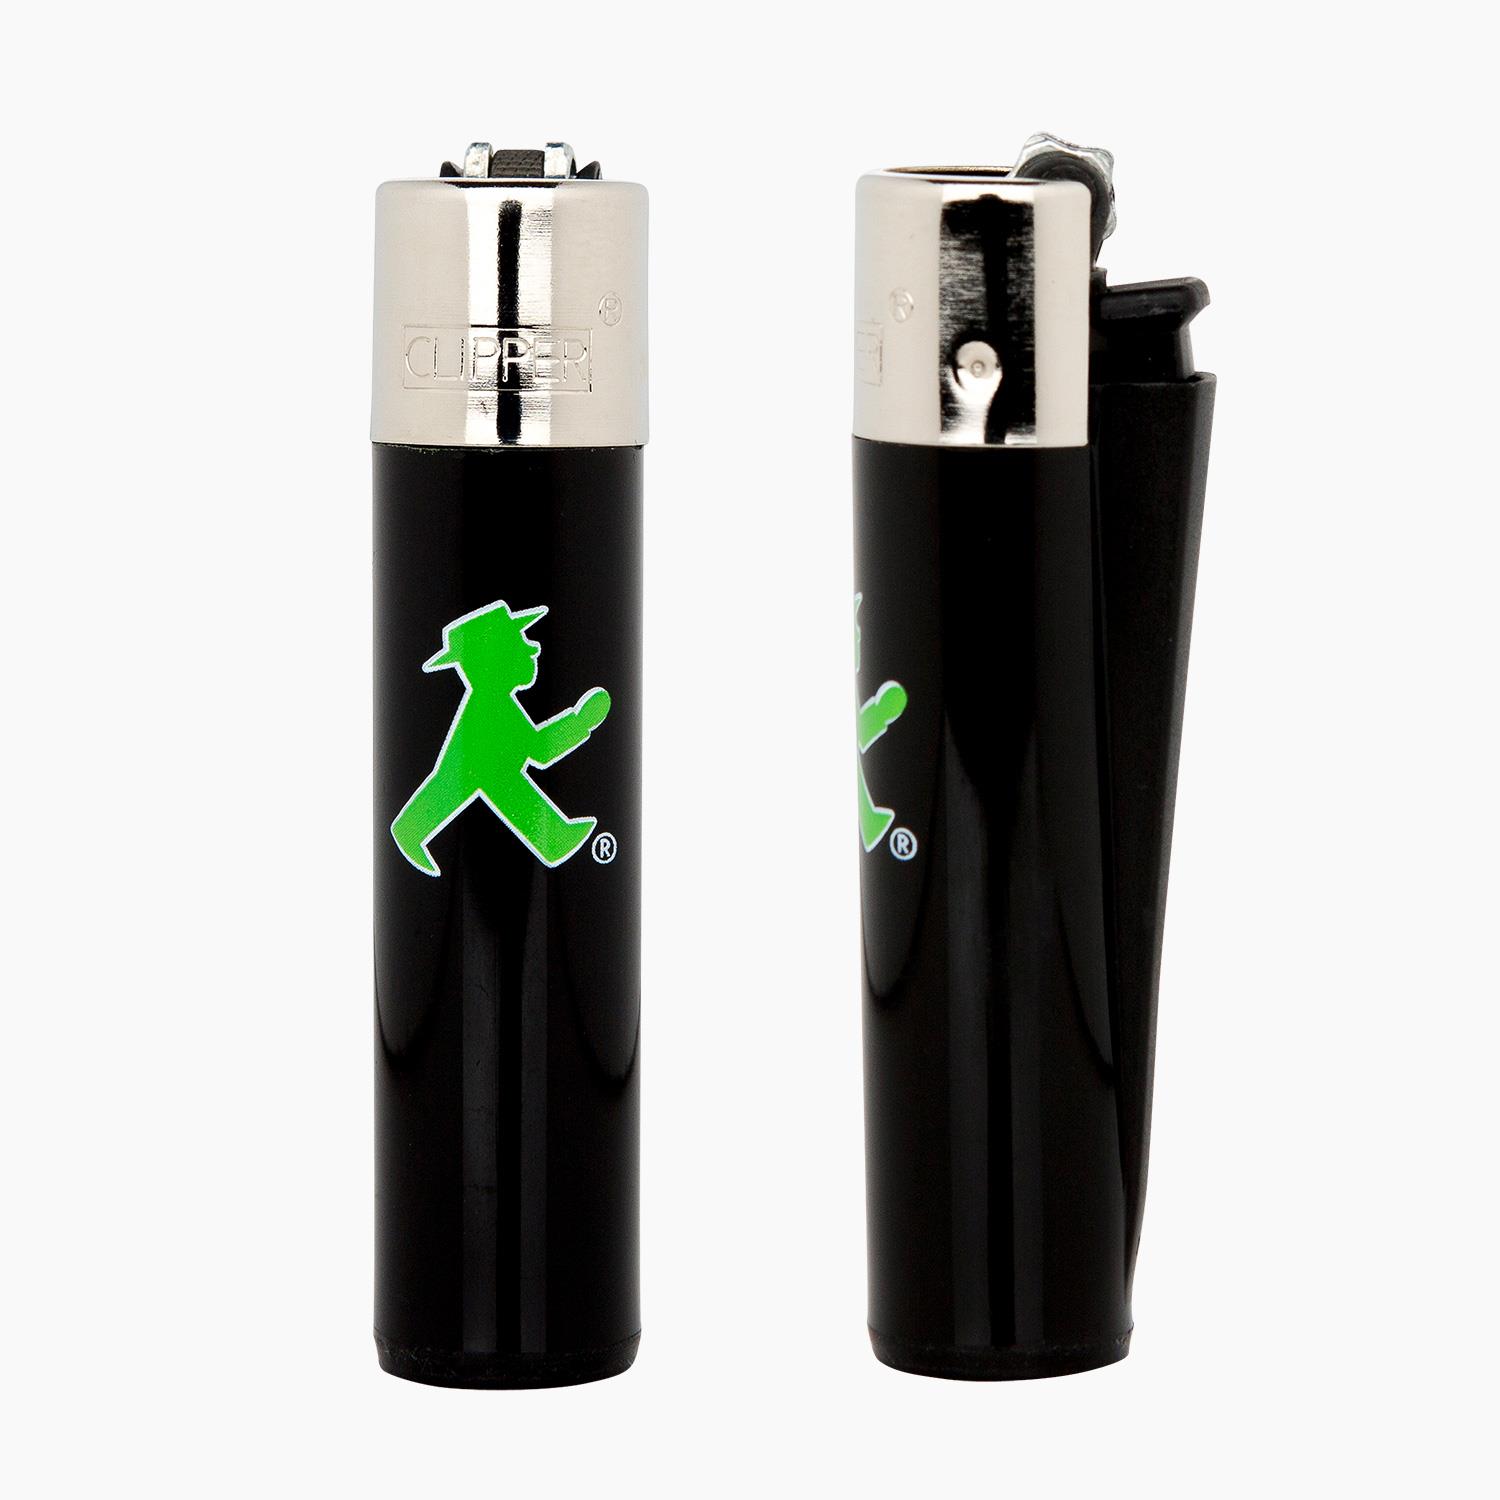 FLAMMENWERFER green/ Lighter